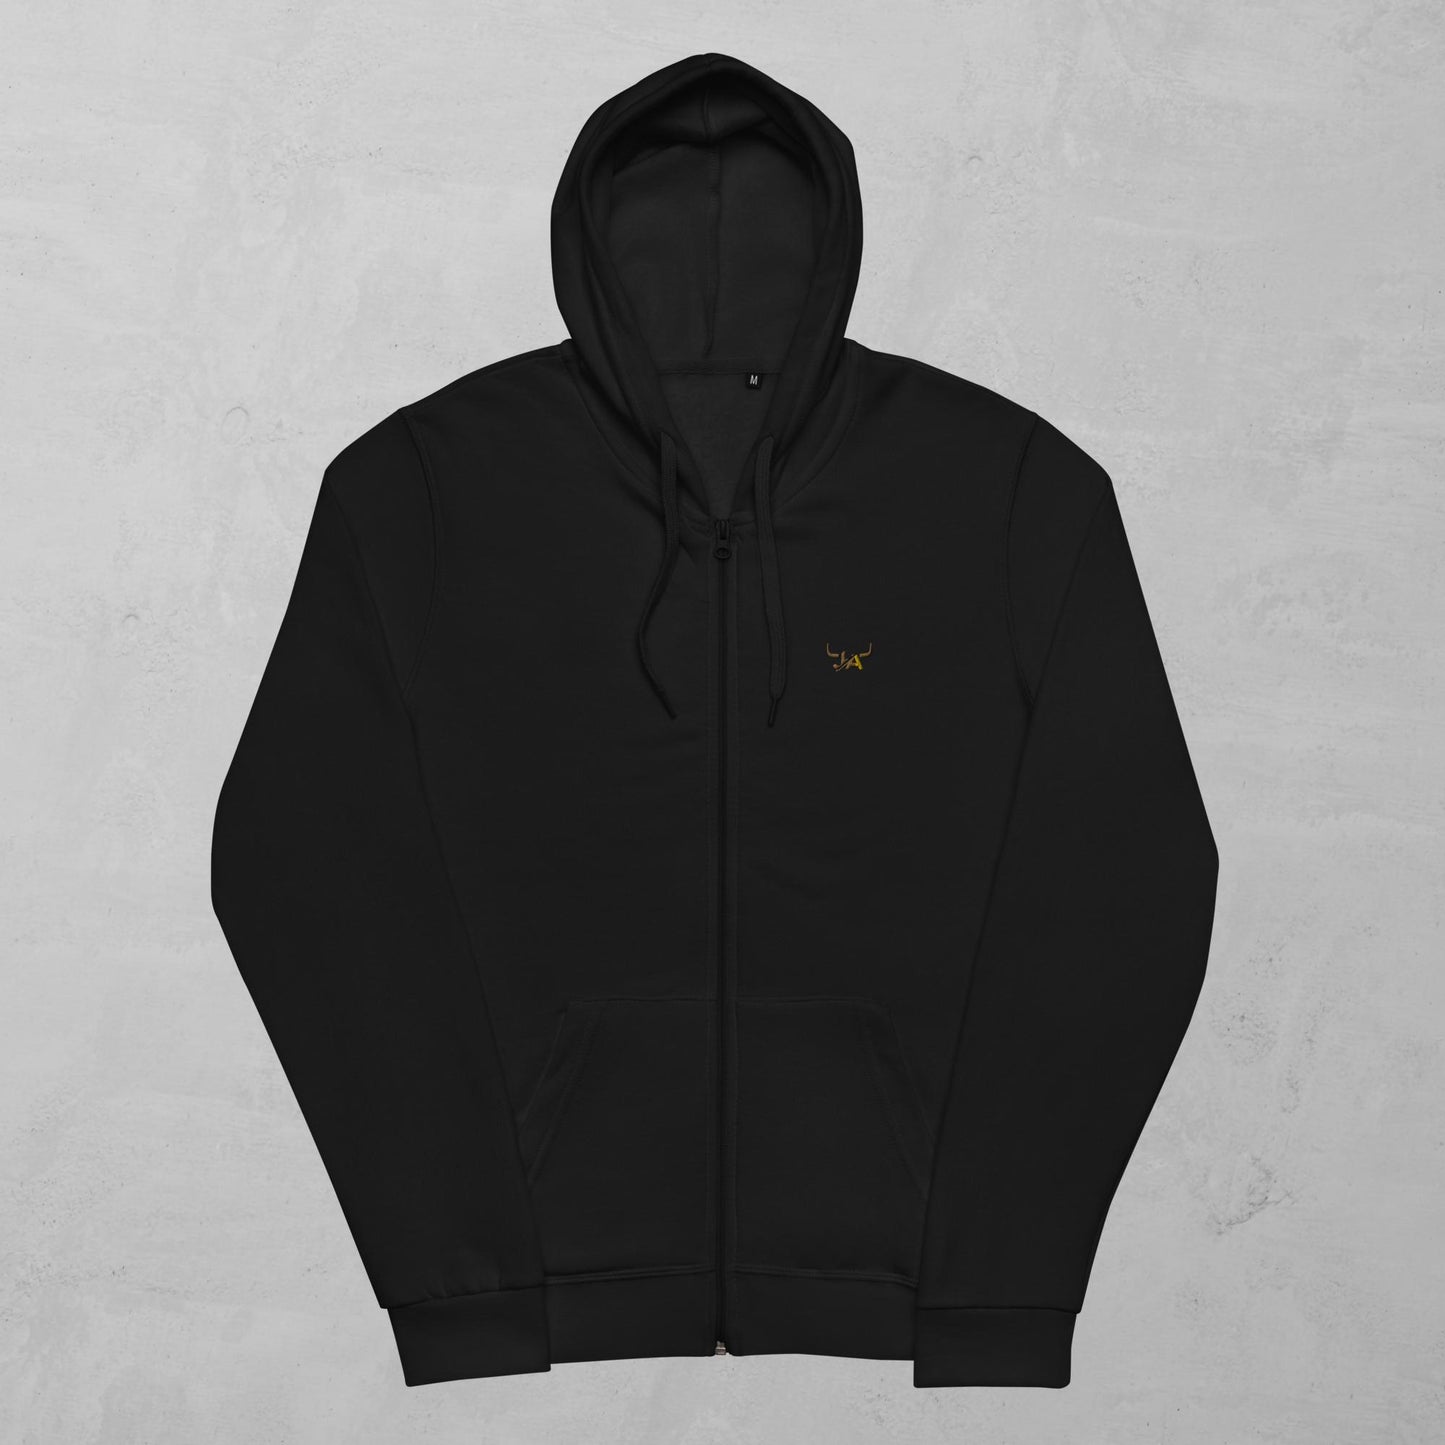 J.A Unisex zip hoodie